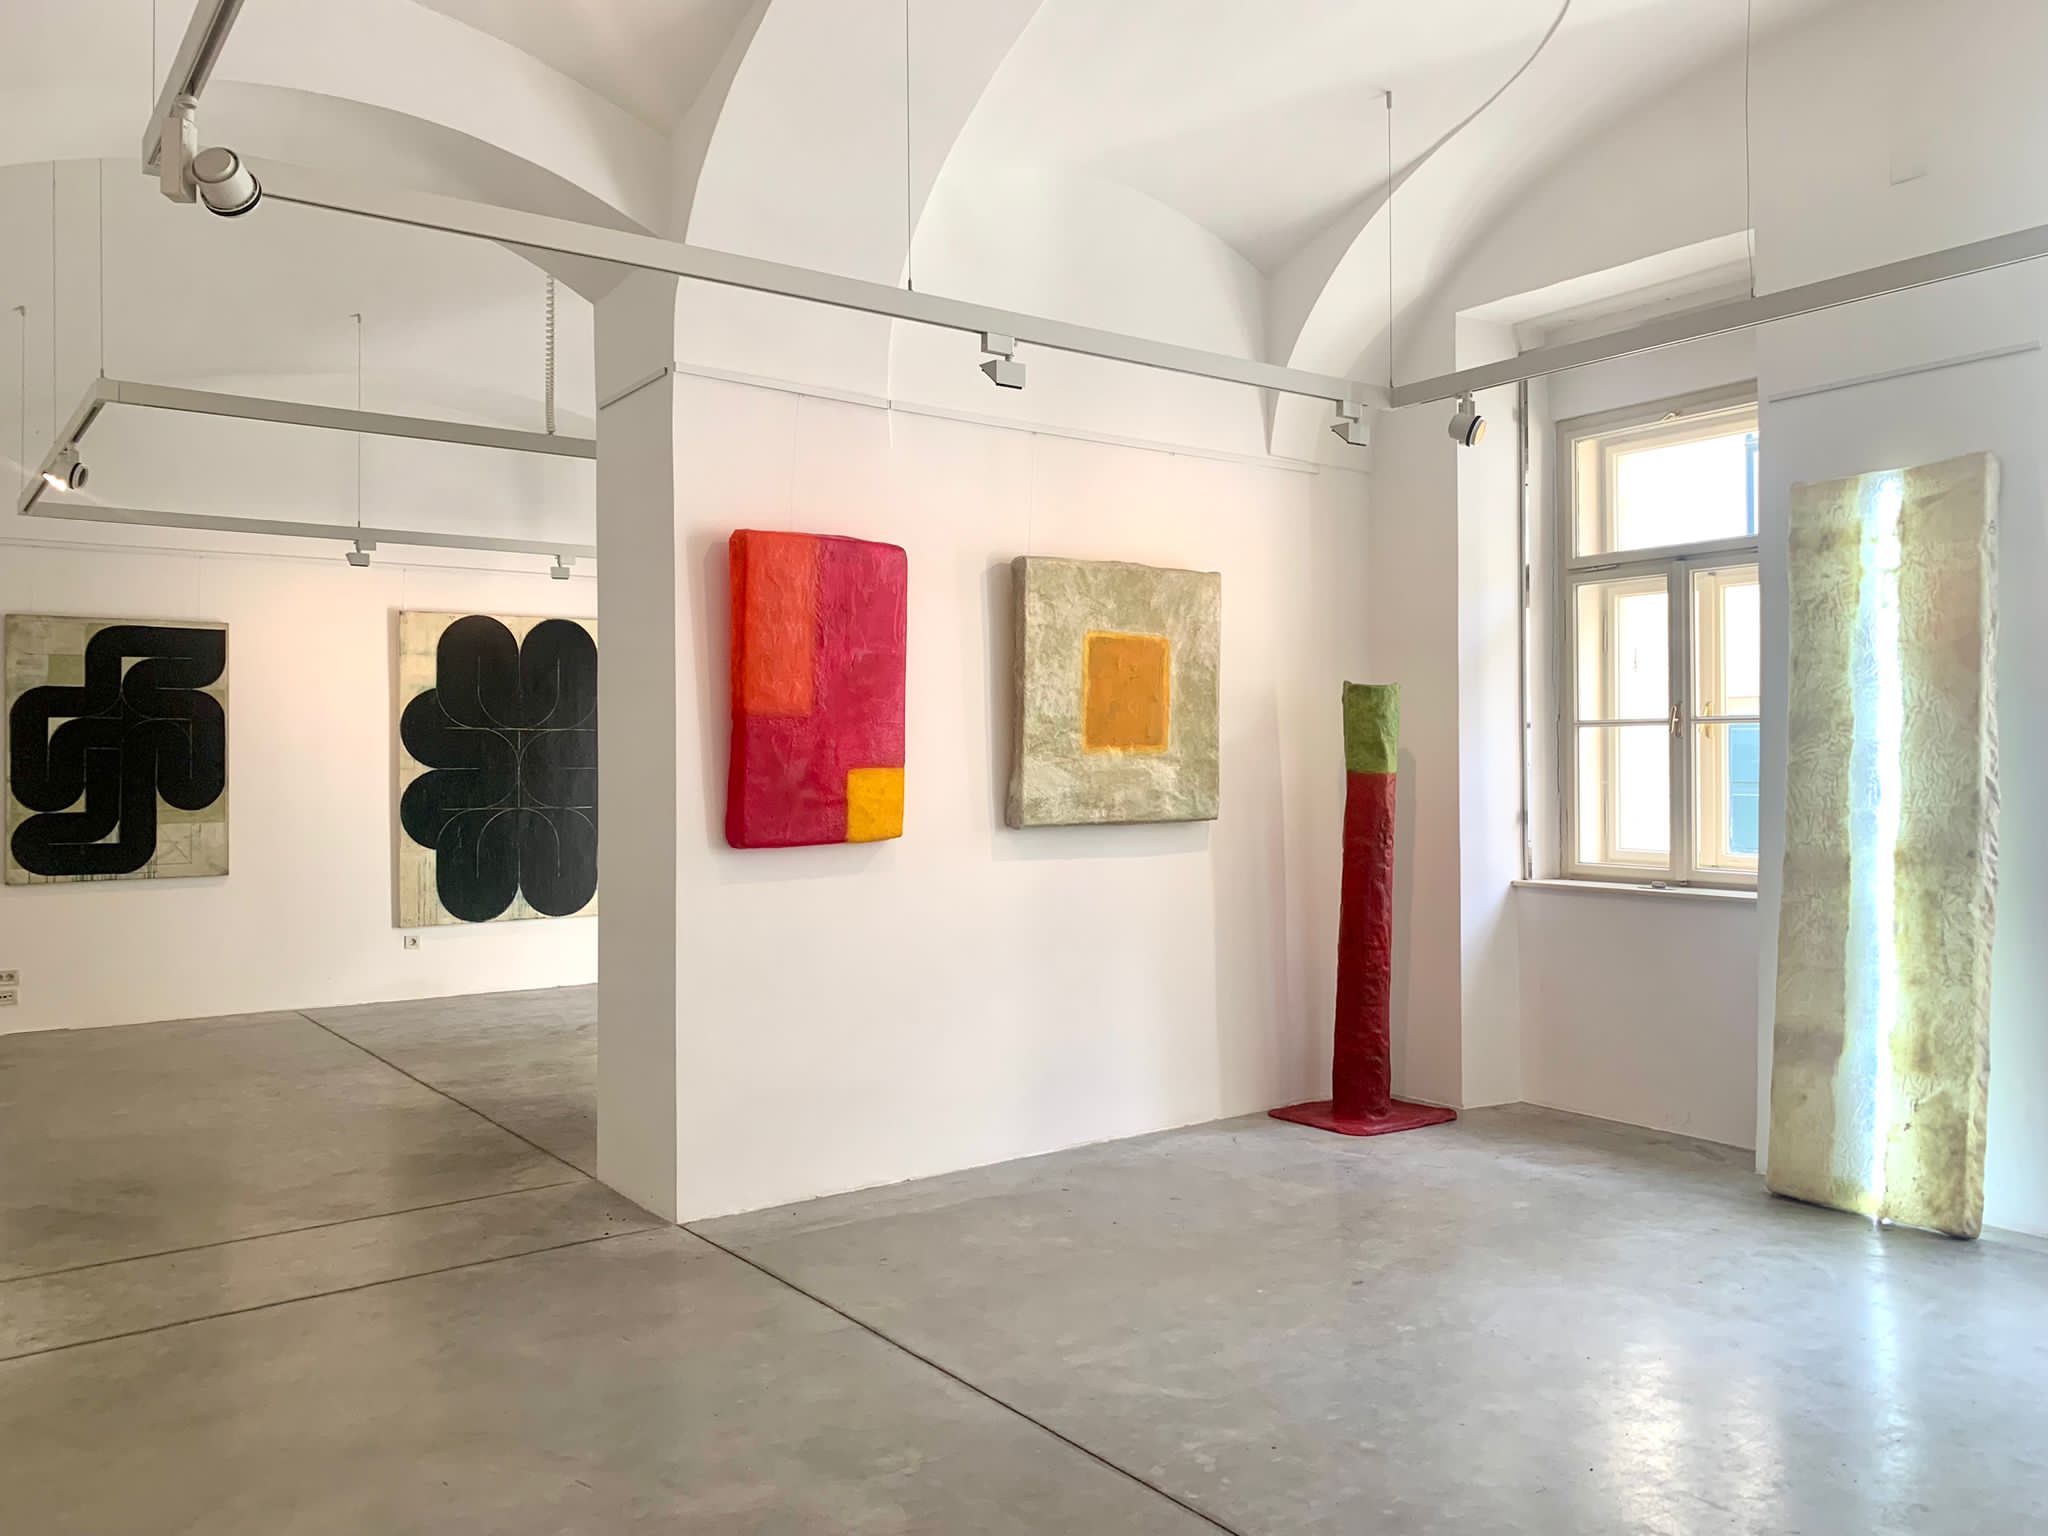 Zagreb je dobio novo mjesto za modernu umjetnost. Otvorena je Galerija Kaptol 